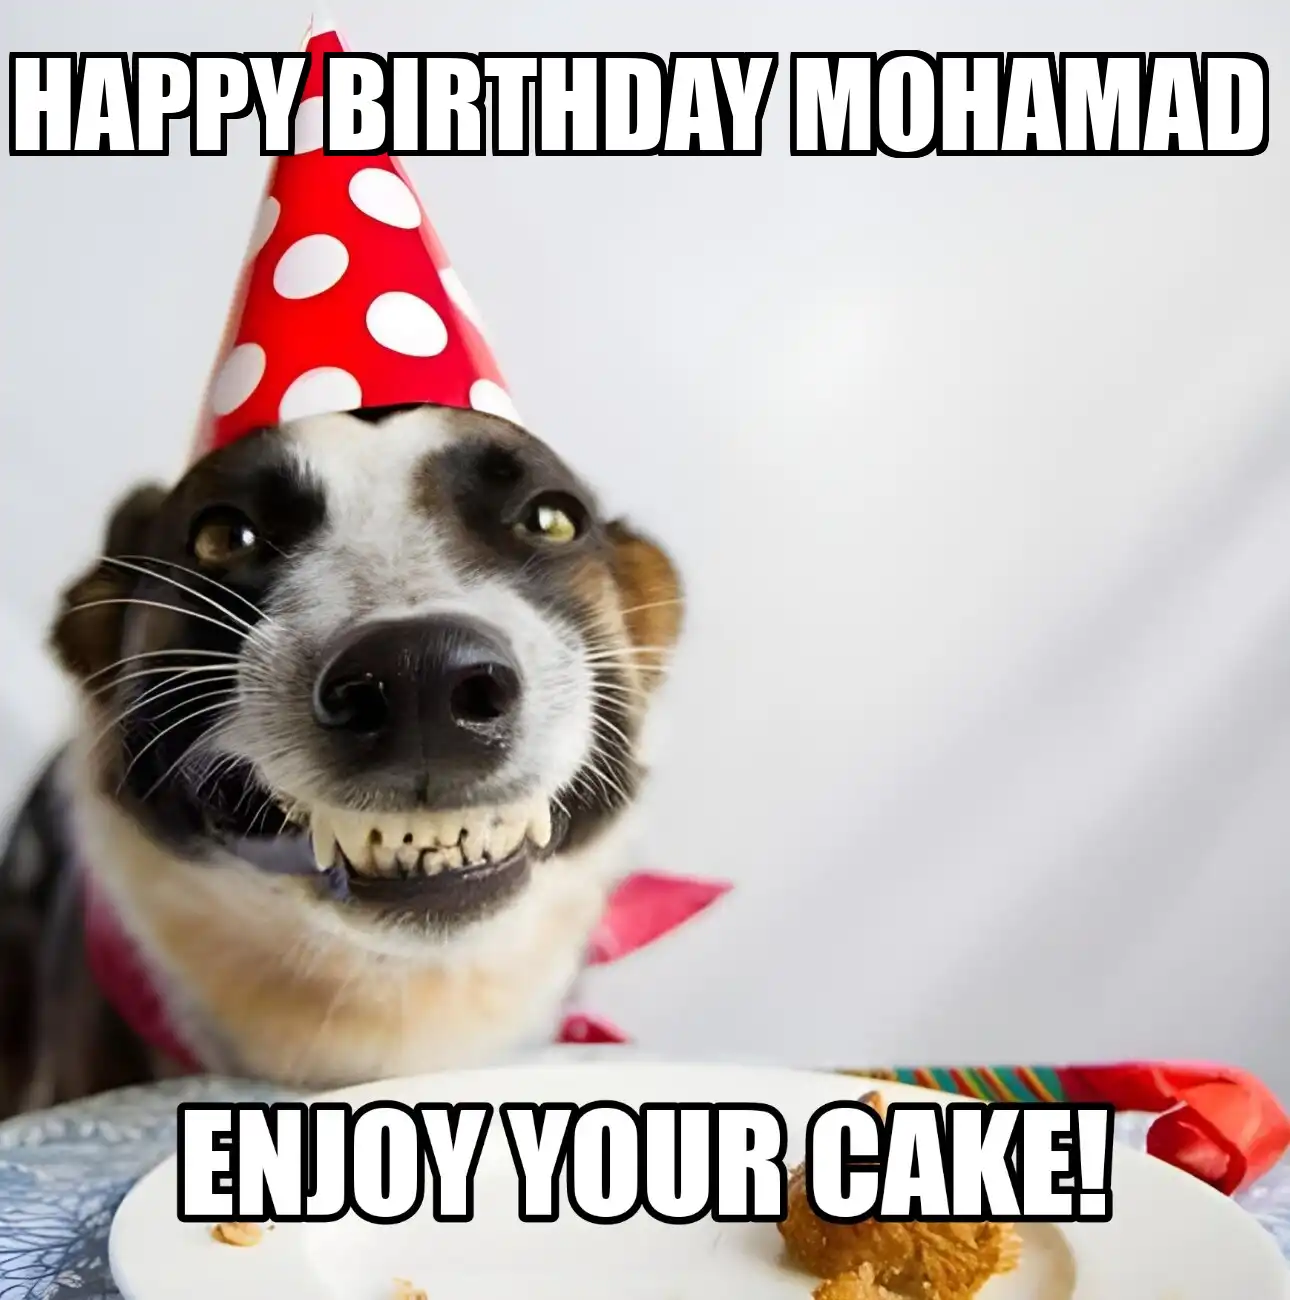 Happy Birthday Mohamad Enjoy Your Cake Dog Meme